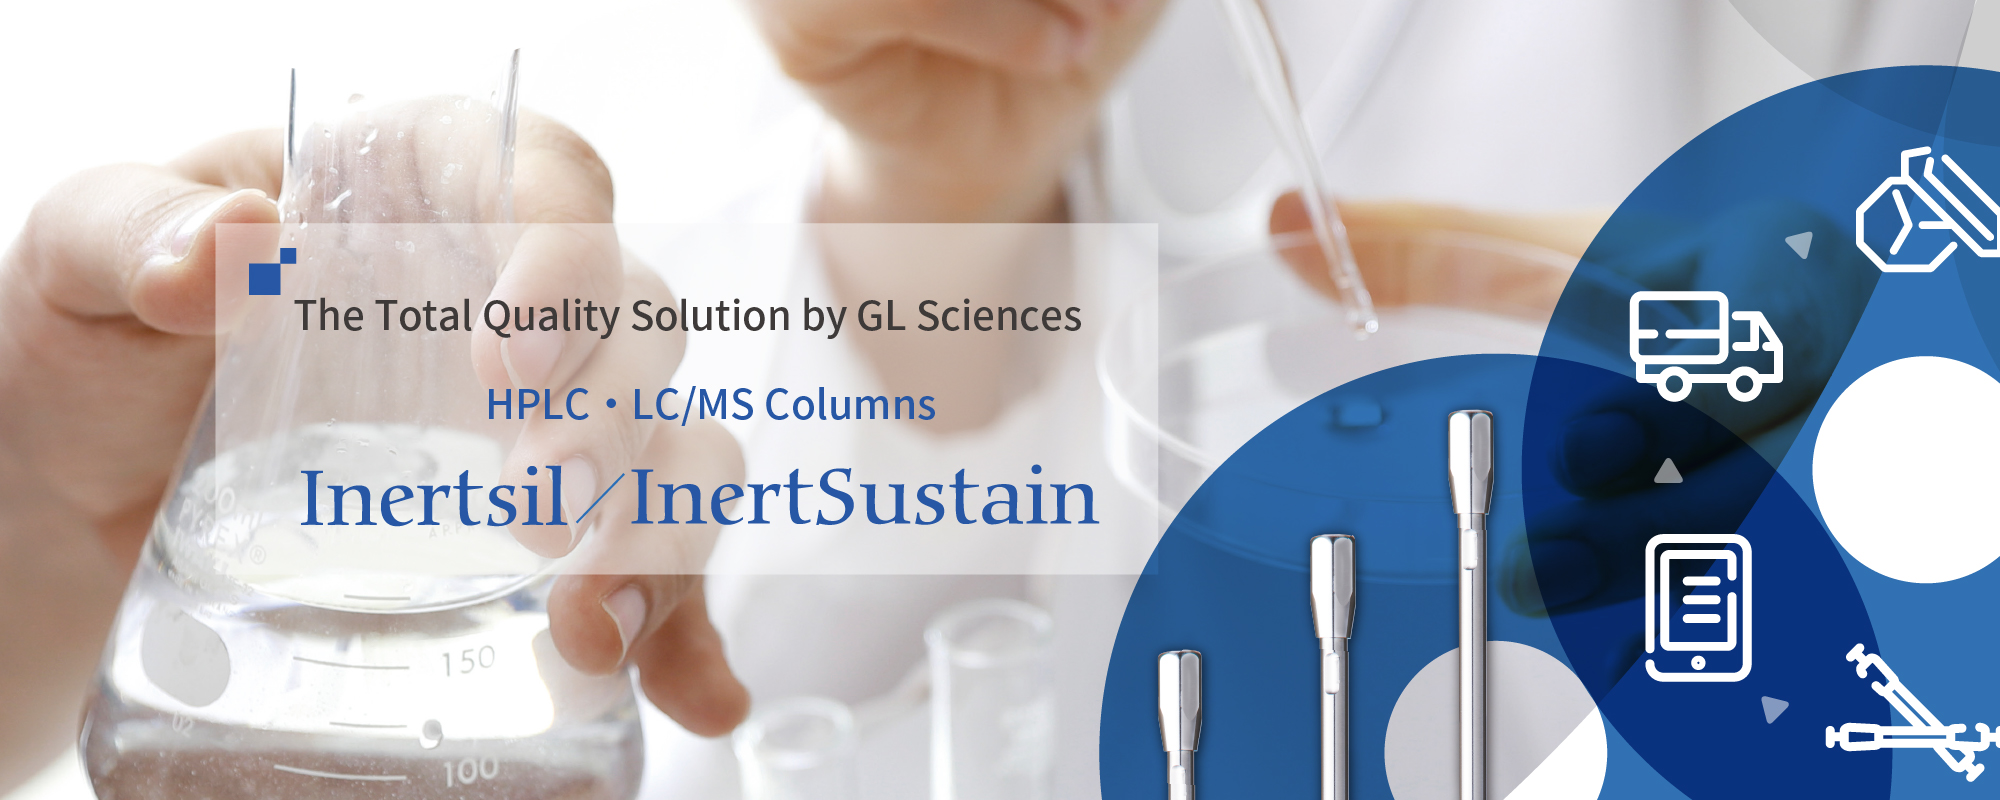 HPLC/Columns Inertsil/InertSustain